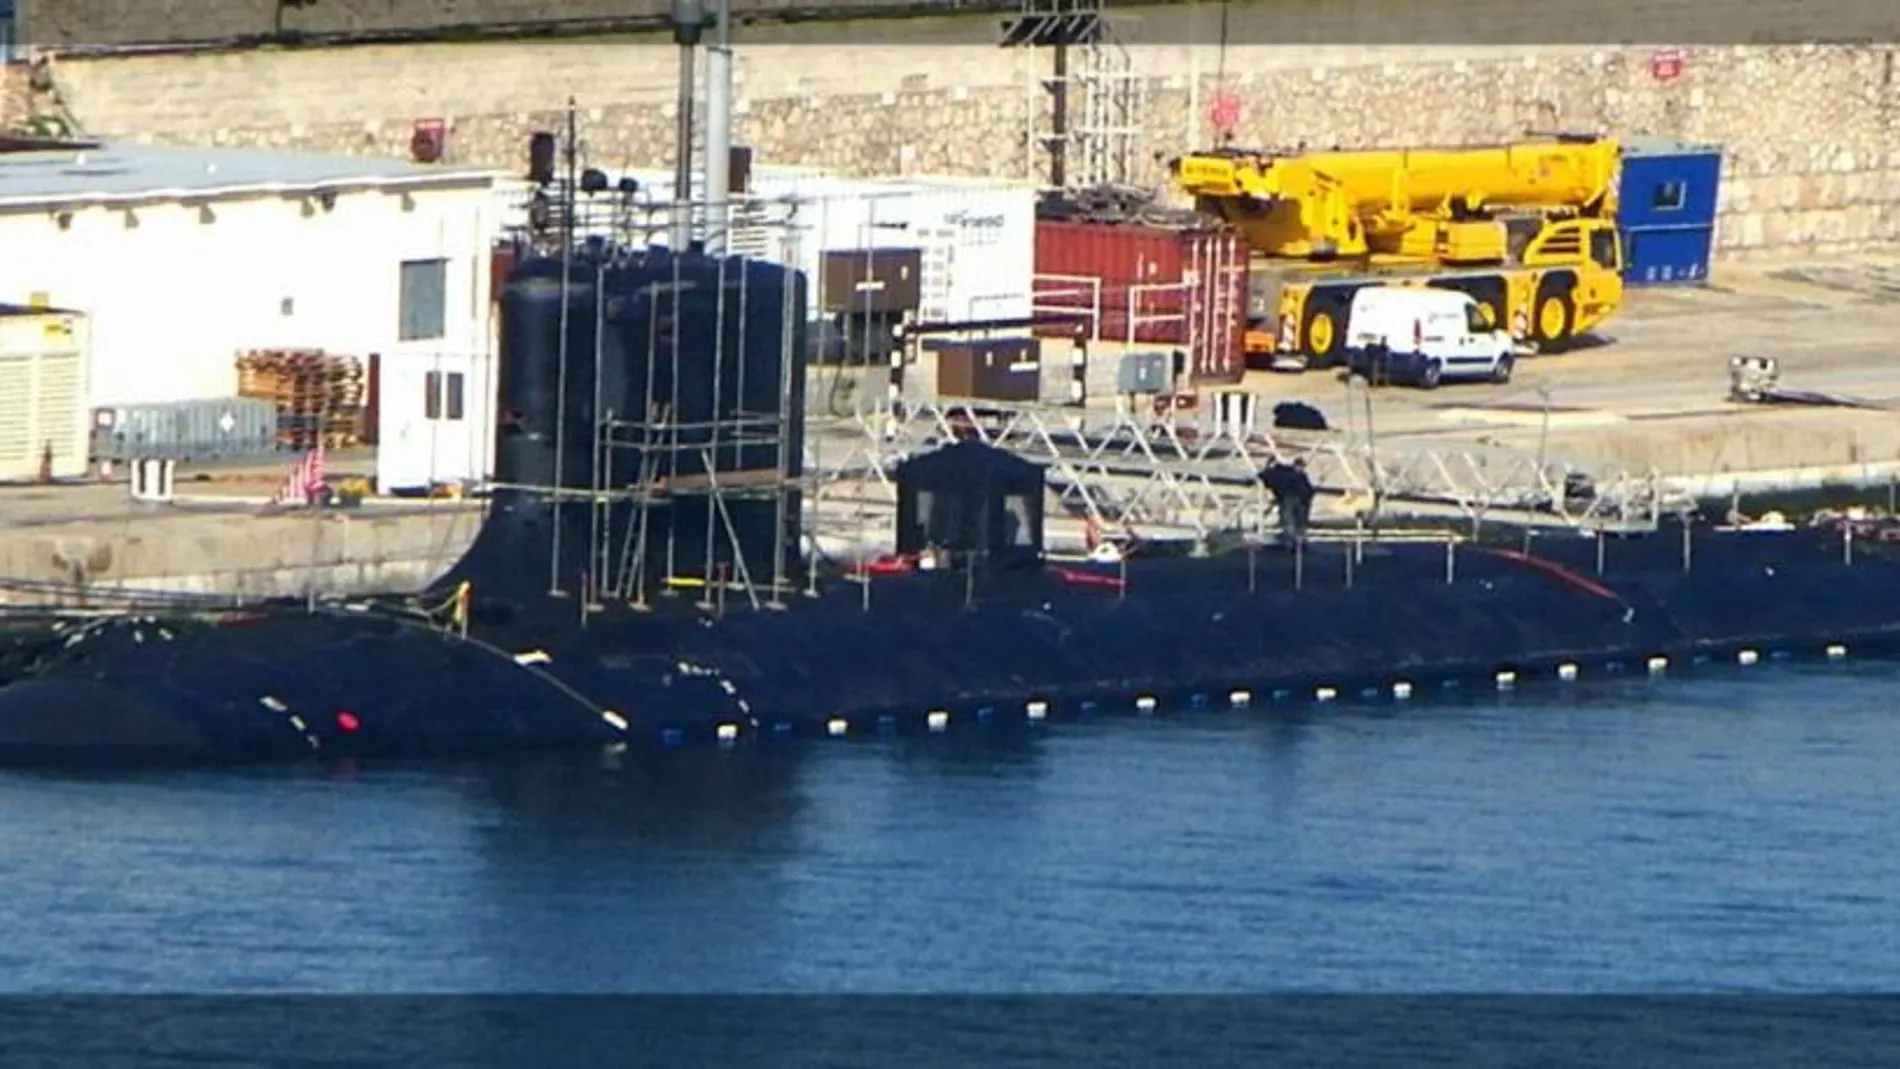 Imagen del submarino “USS John Warner” que está siendo reparado en el Peñón, según los ecologistas